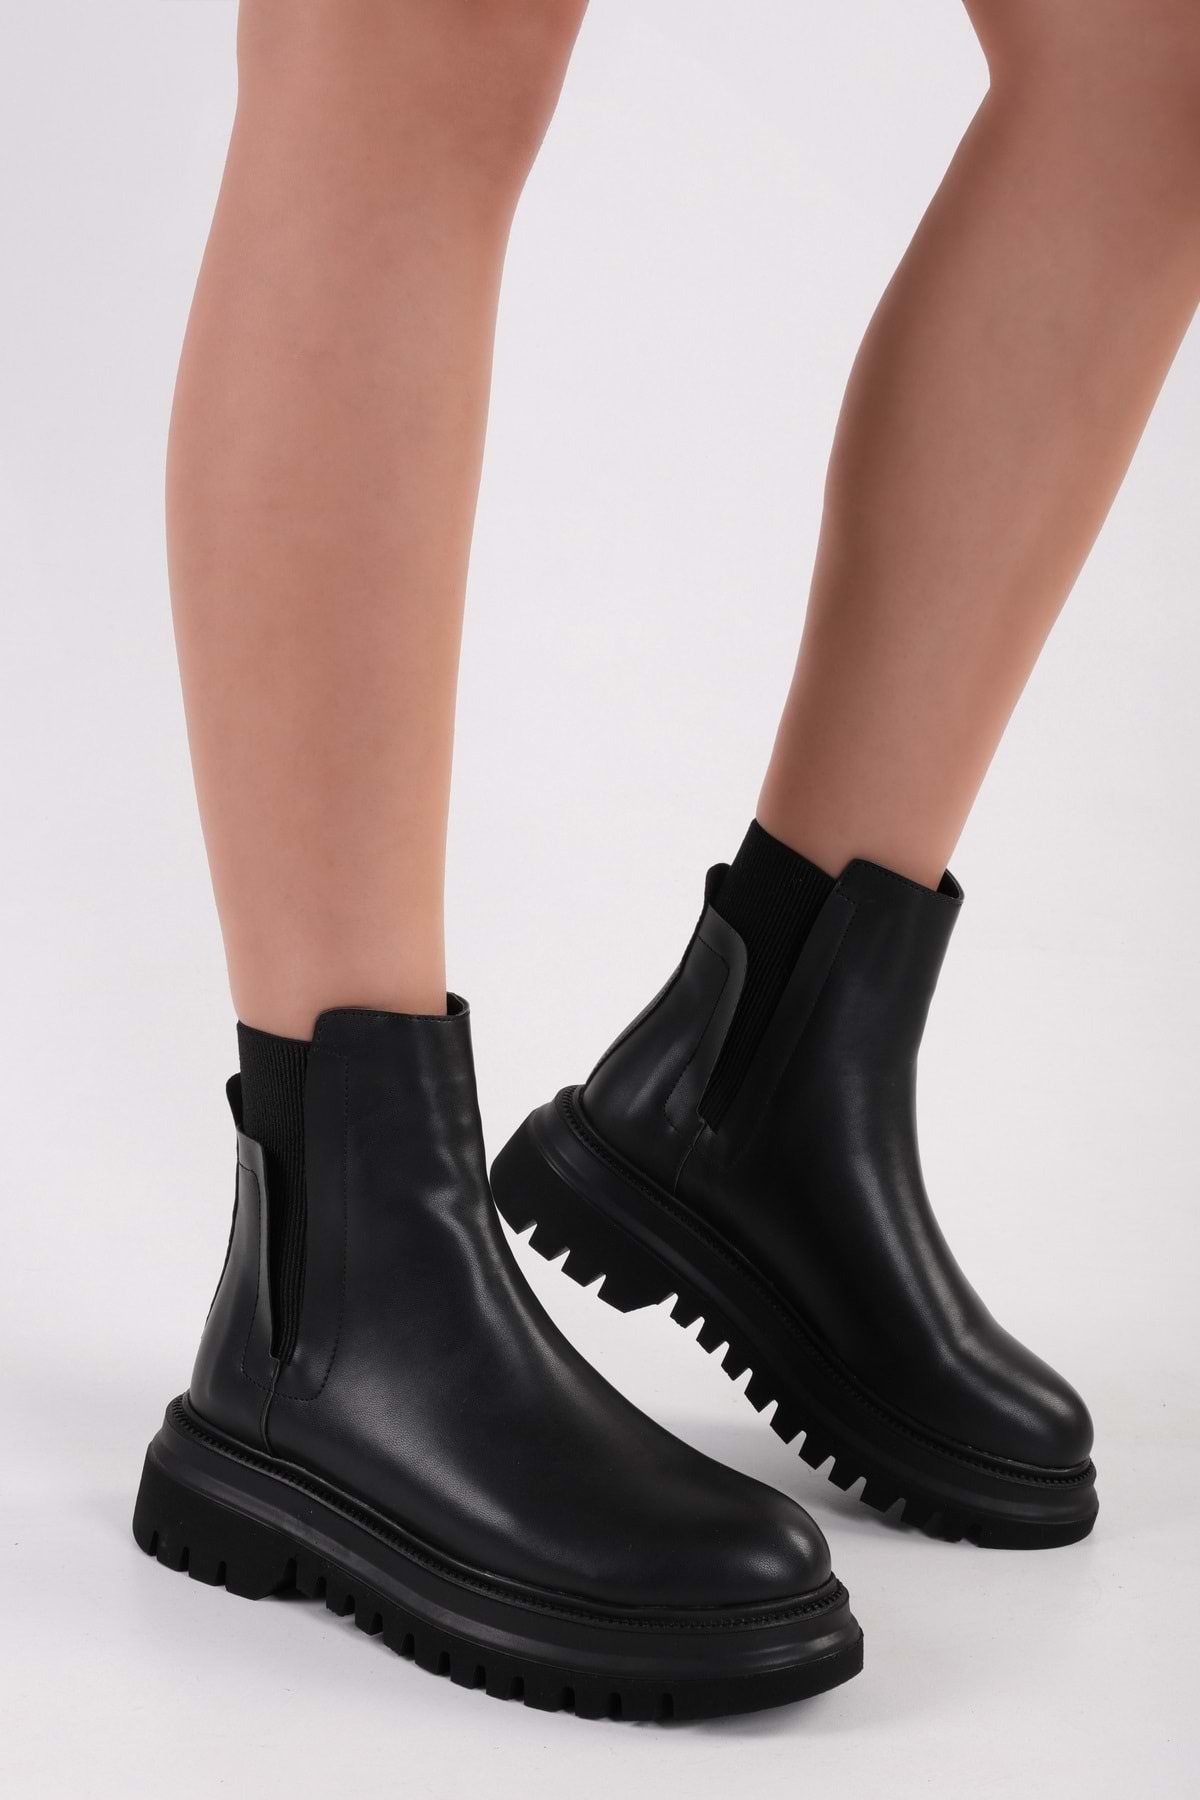 Levně Shoeberry Women's Luke Black Thick Sole Boots